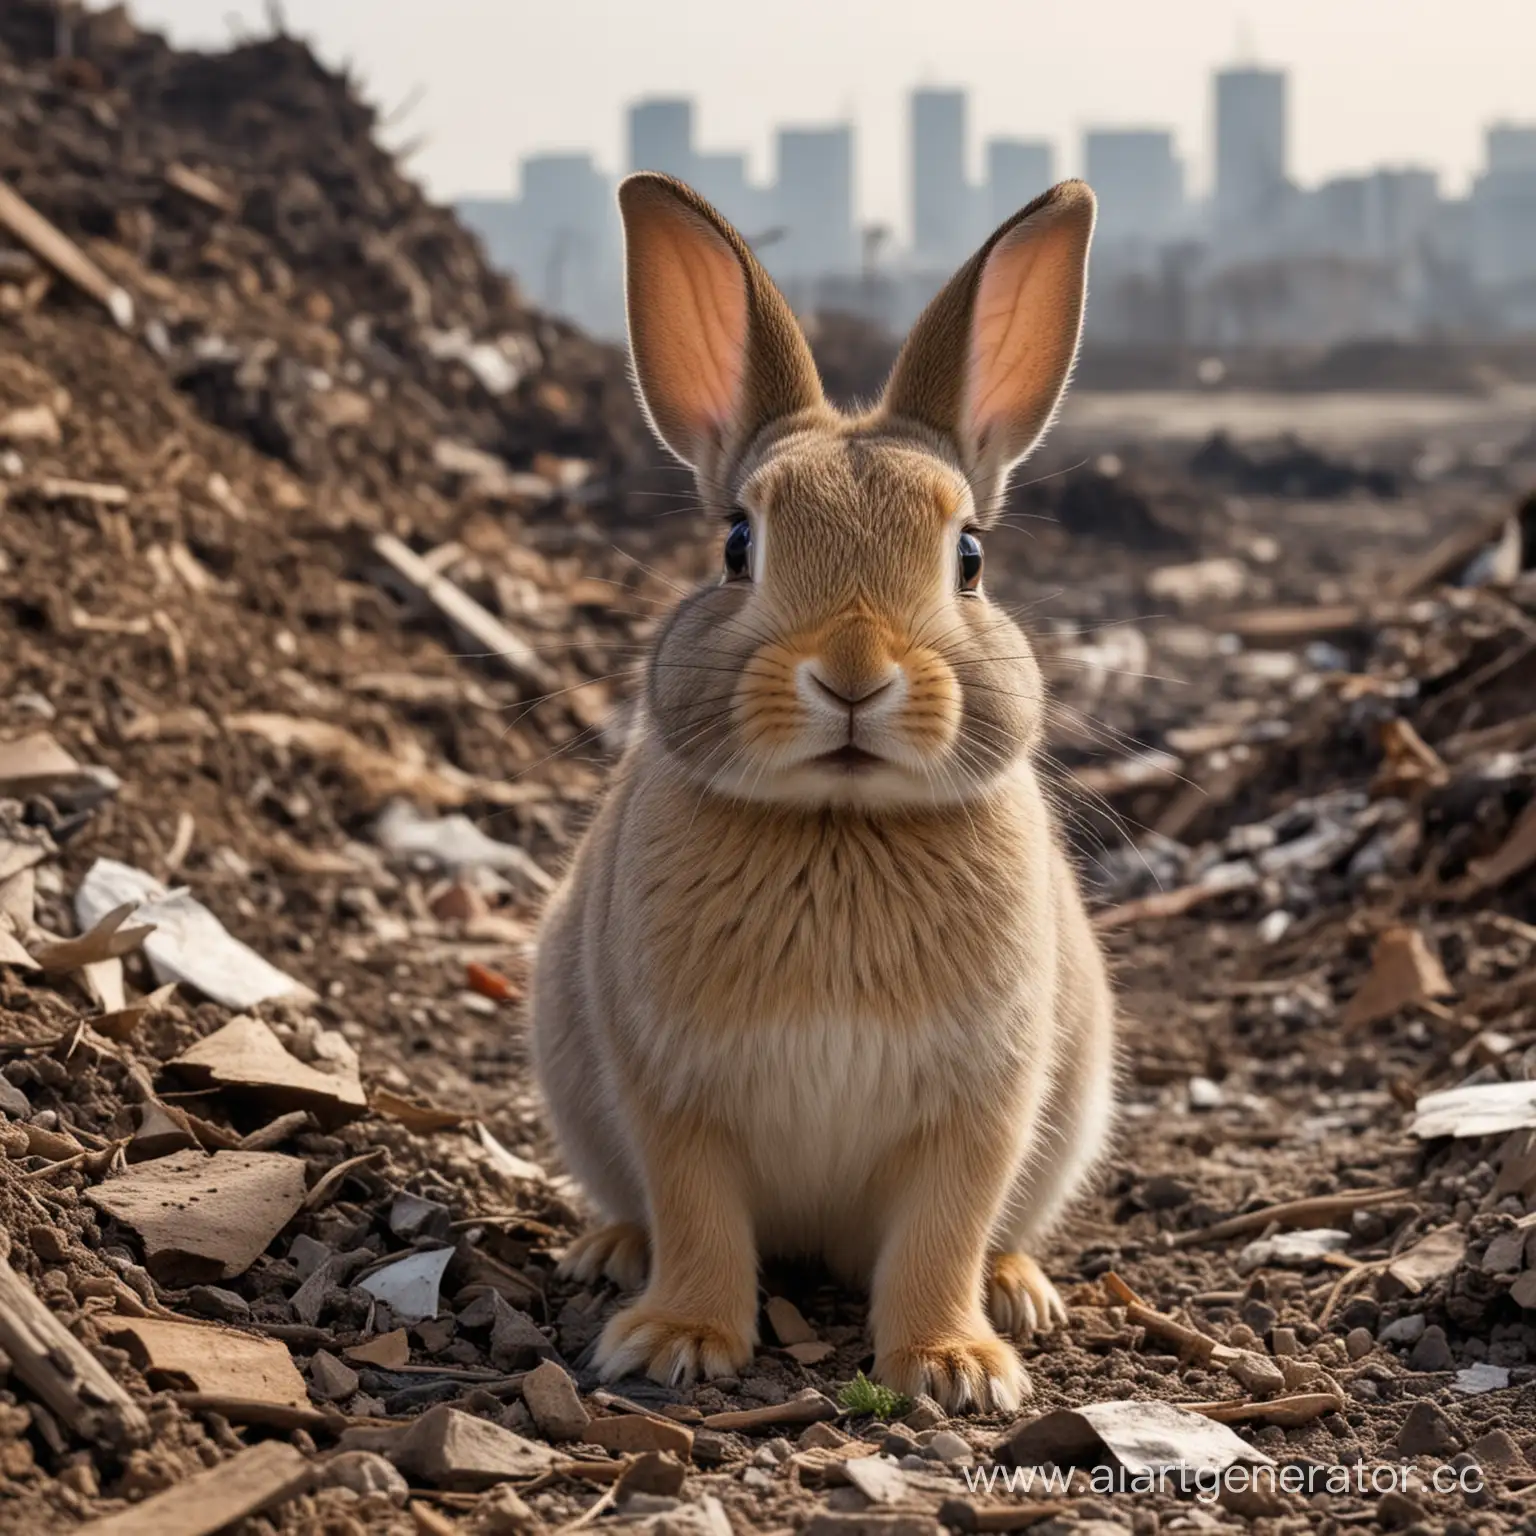 Le petit lapin était choqué par le bruit fort, toute la pollution et tous les déchets qu'il voyait partout.